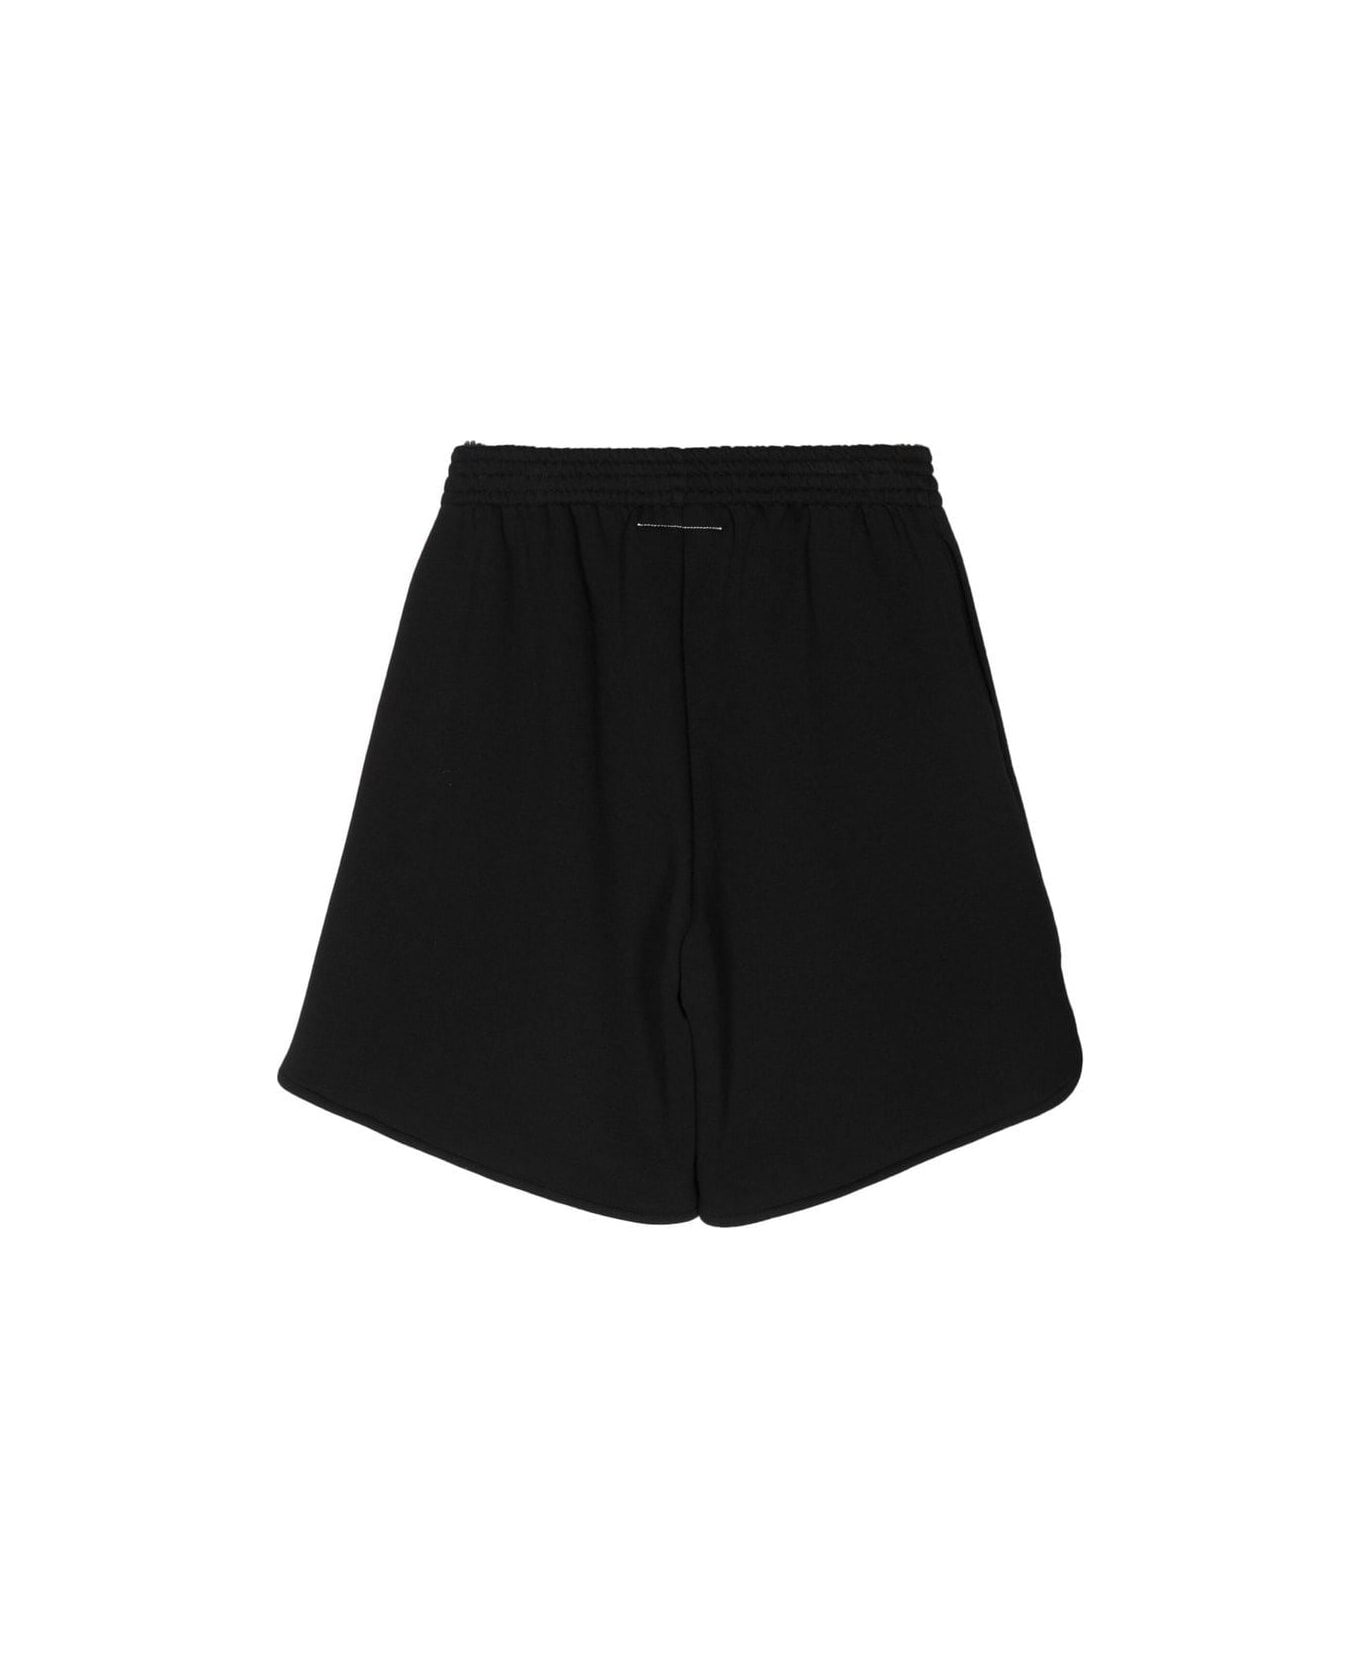 MM6 Maison Margiela Fited Shorts - Black